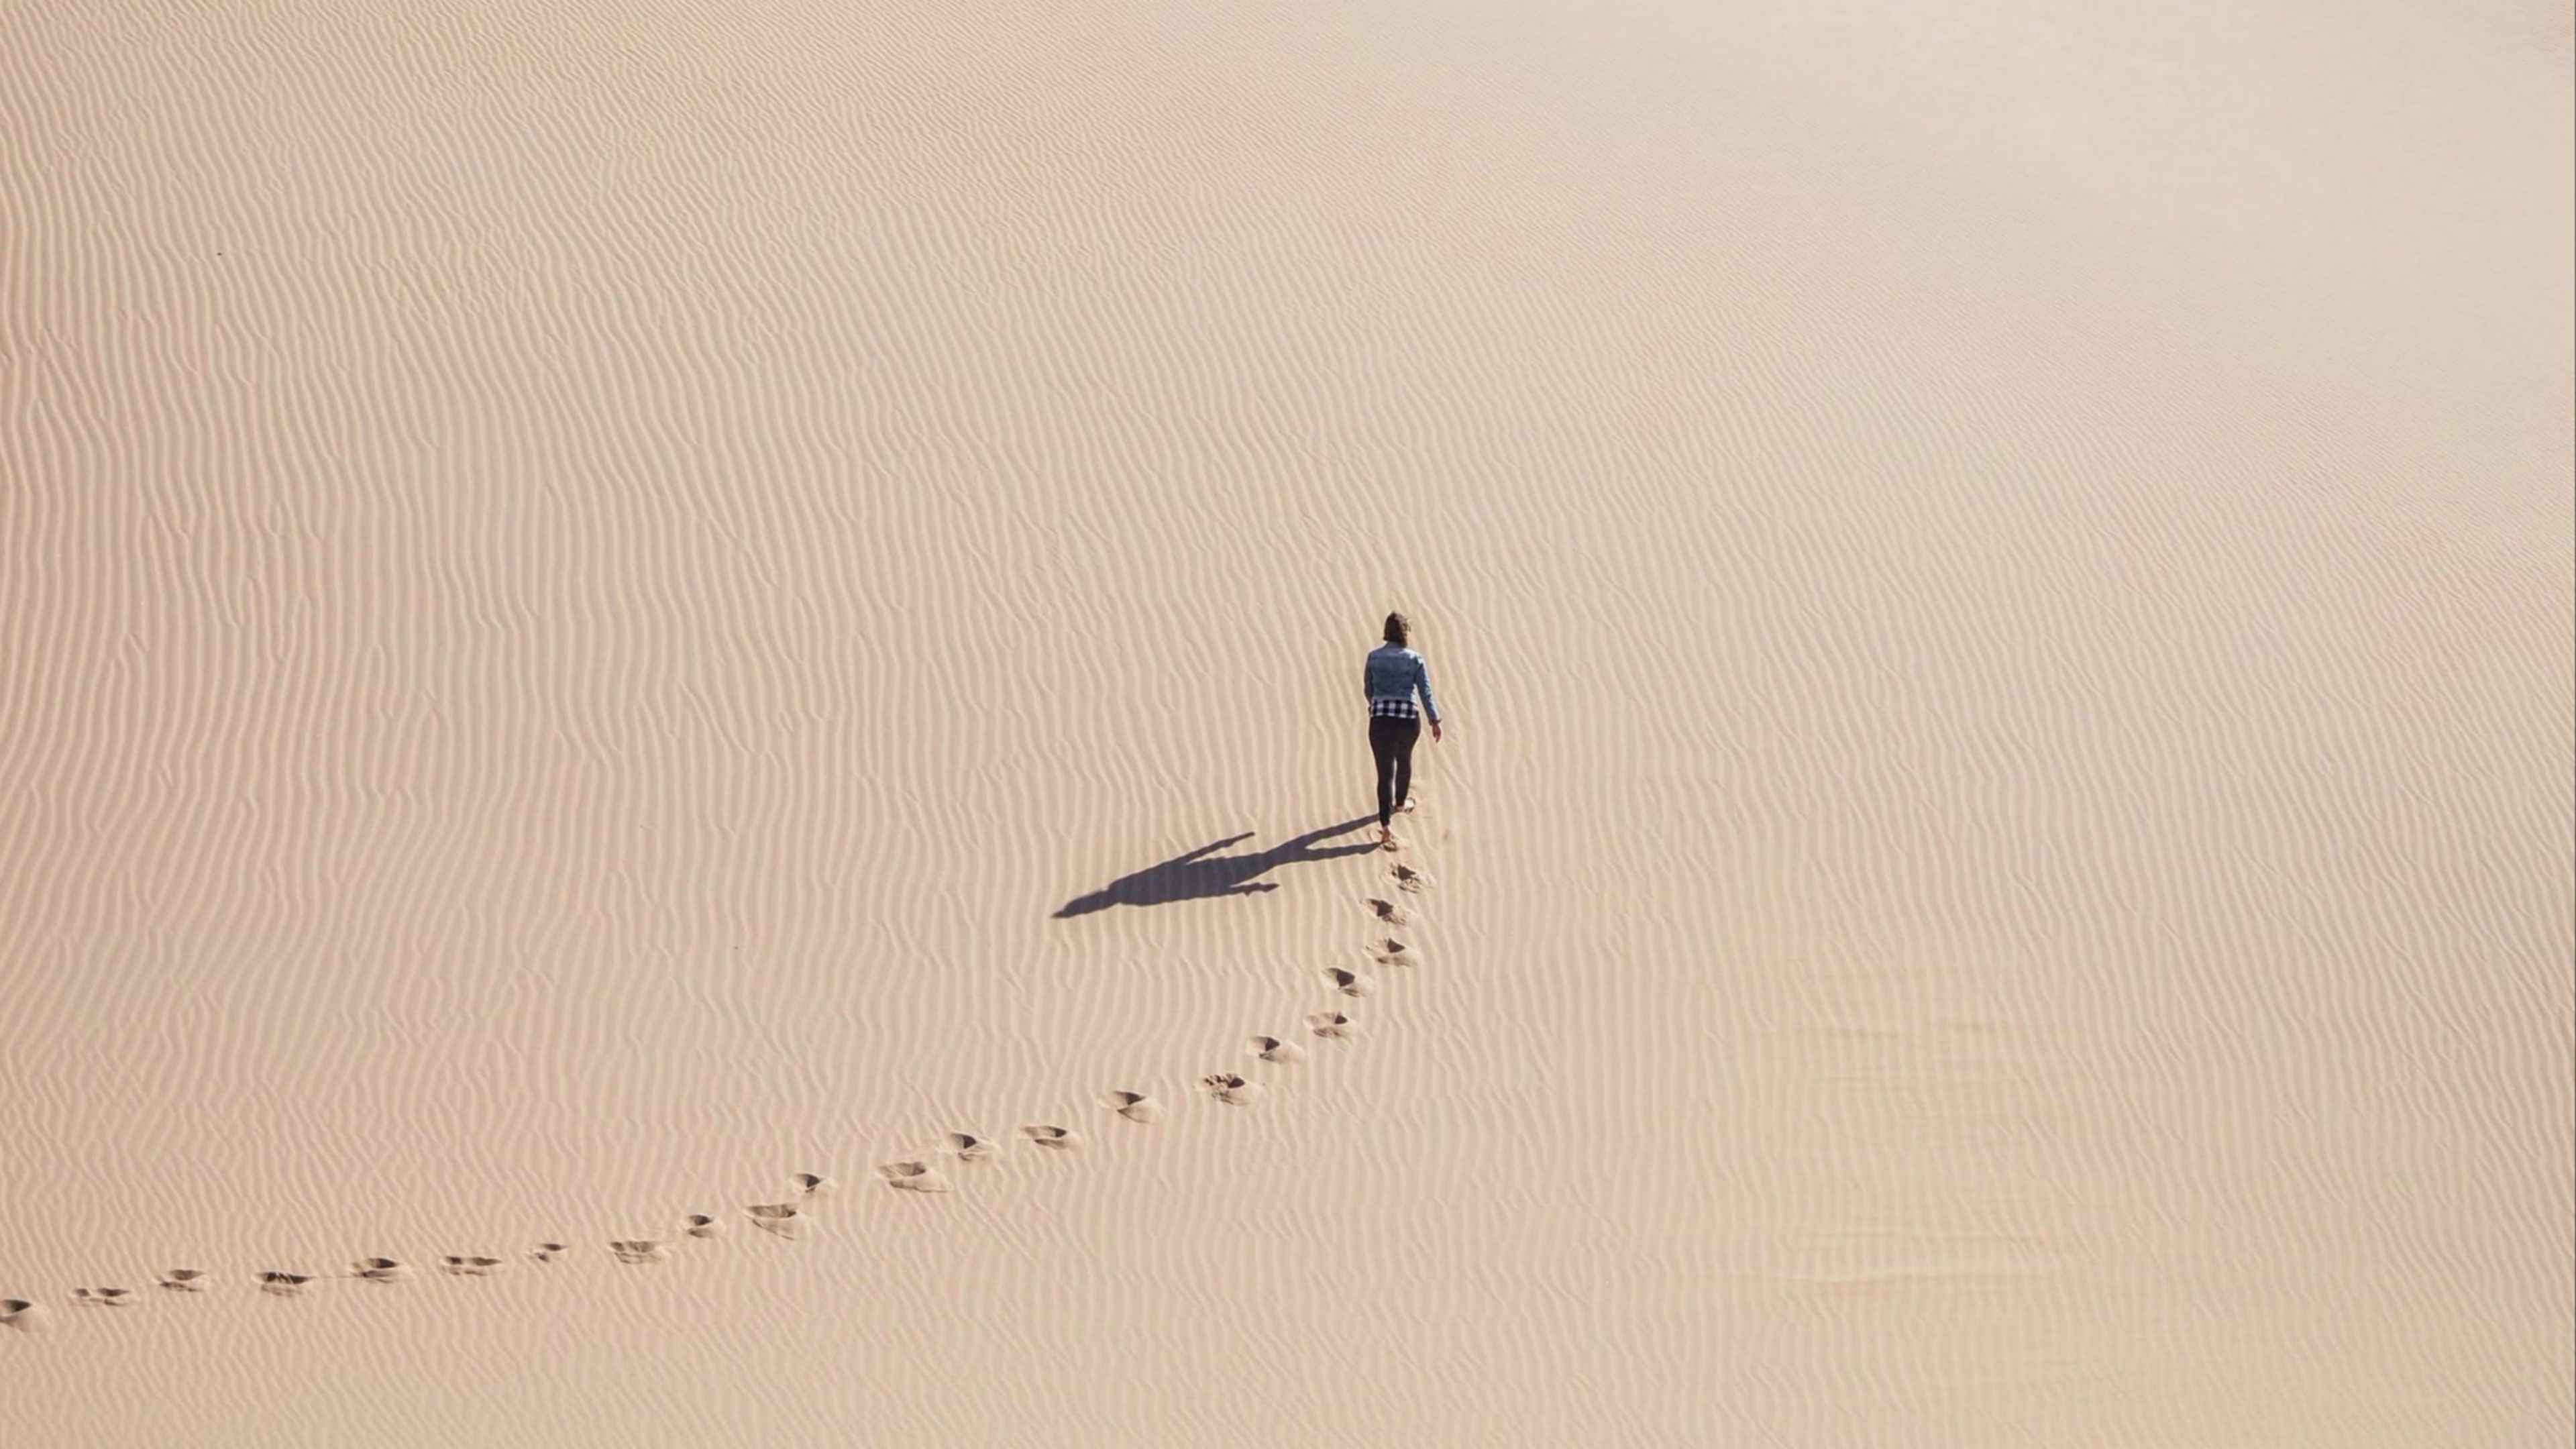 Следы в никуда. Следы в пустыне. Человек в пустыне. Человек идет по пустыне. Следы на песке в пустыне.